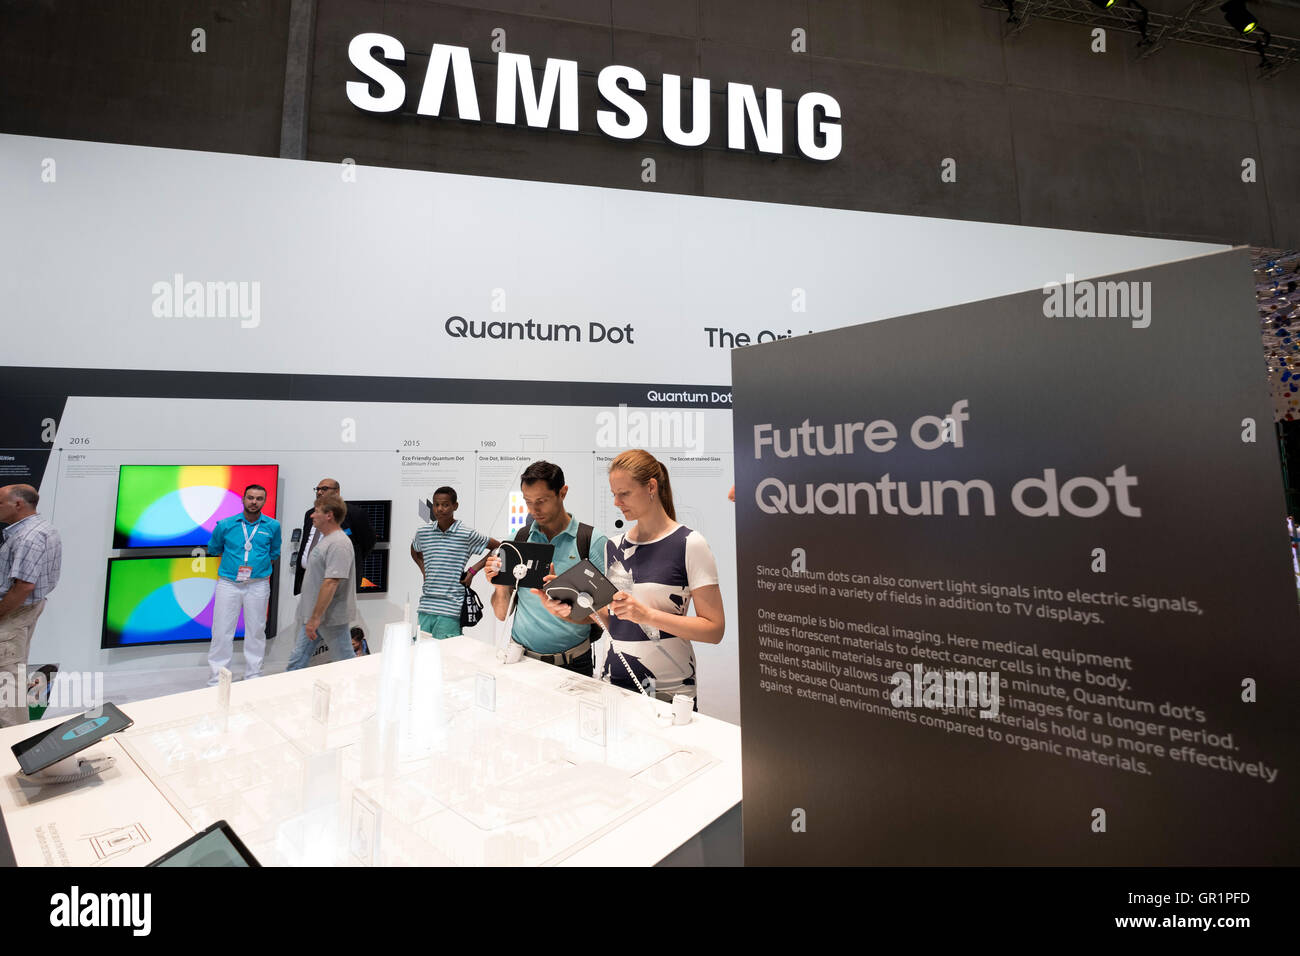 La télévision Samsung point quantique 2016 Affichage à l'IFA (Internationale Funkausstellung Berlin), Berlin, Allemagne Banque D'Images